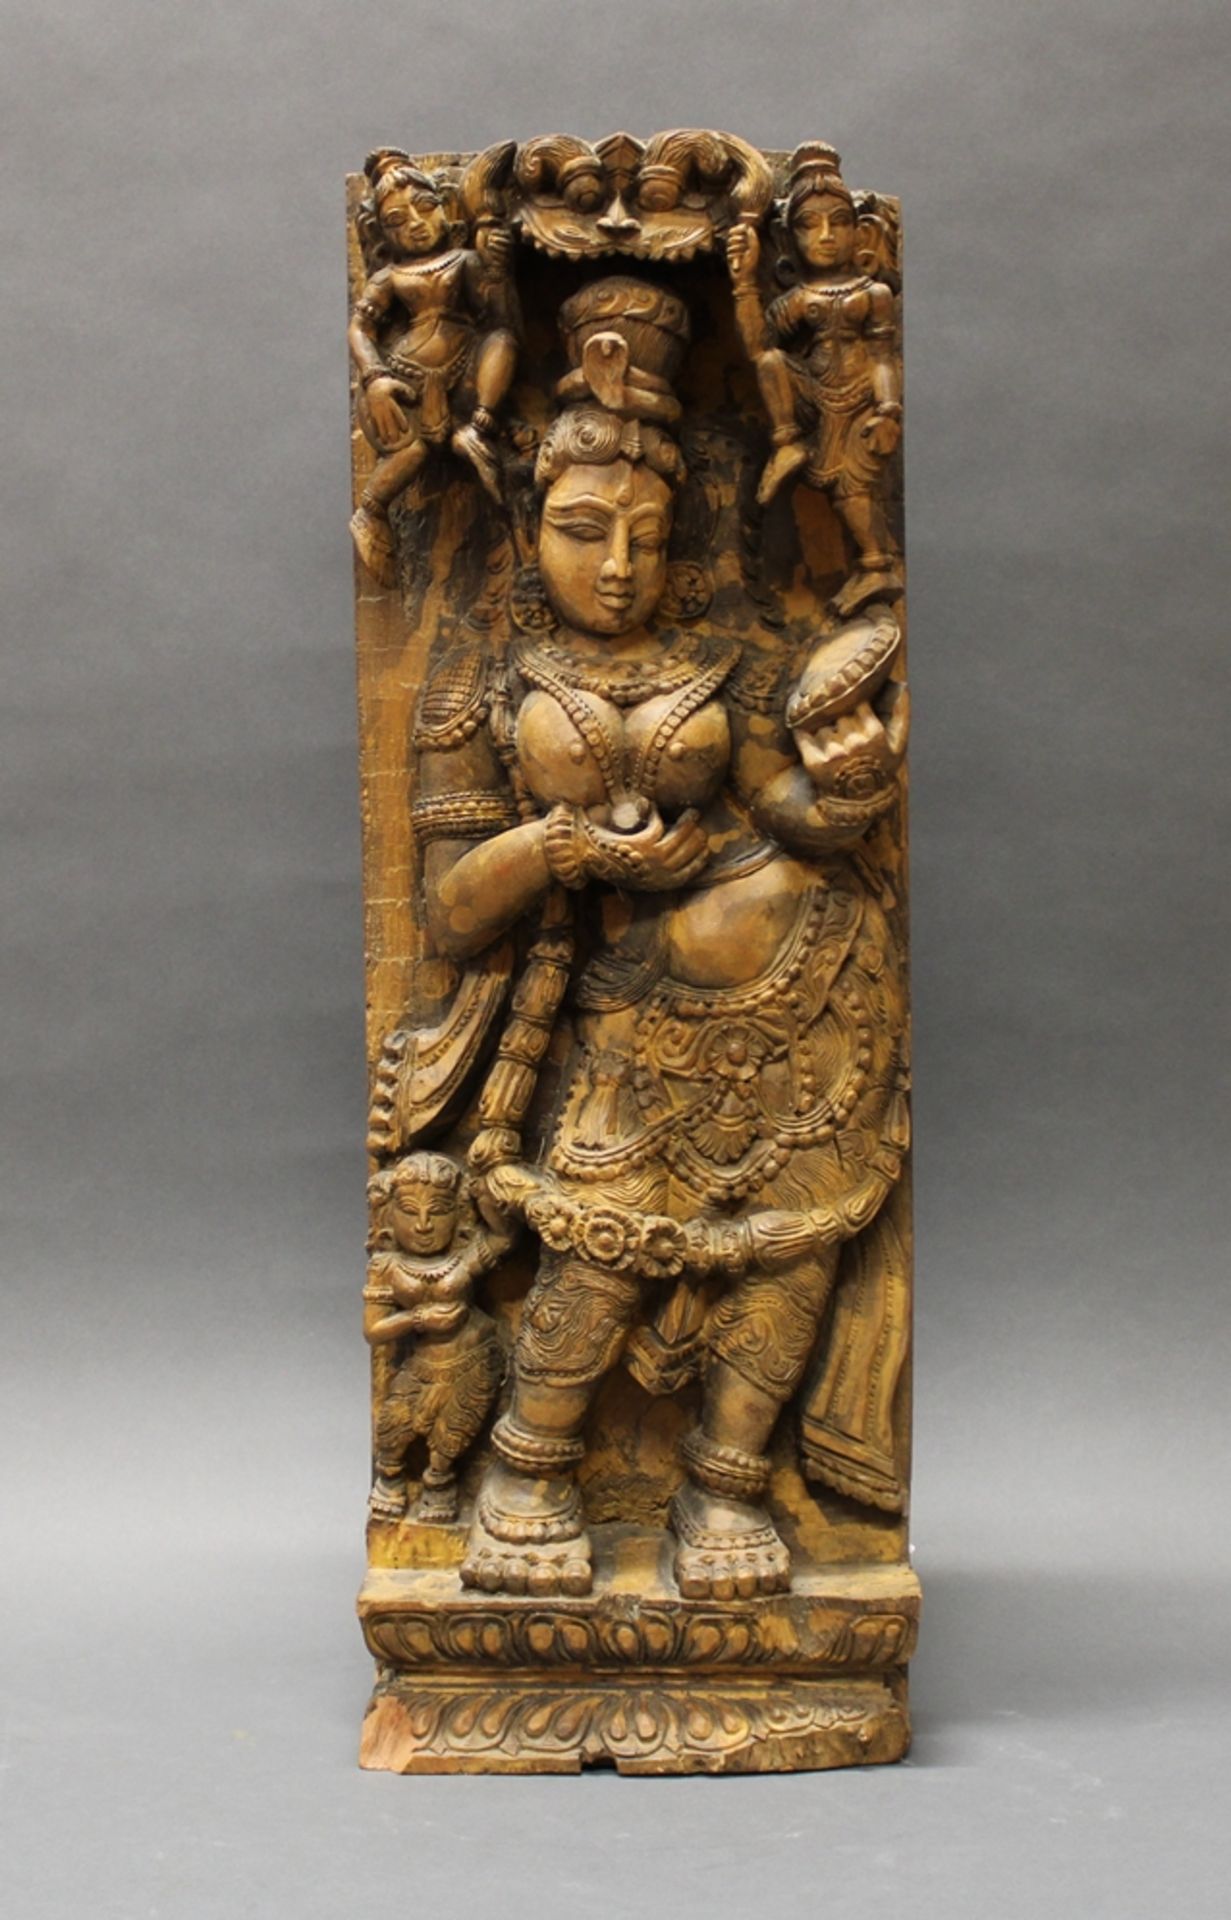 Holzrelief, "Weibliche Gottheit unter Baldachin", Indien, 19./20. Jh., geschnitzt, 68 x 25 cm, Alte